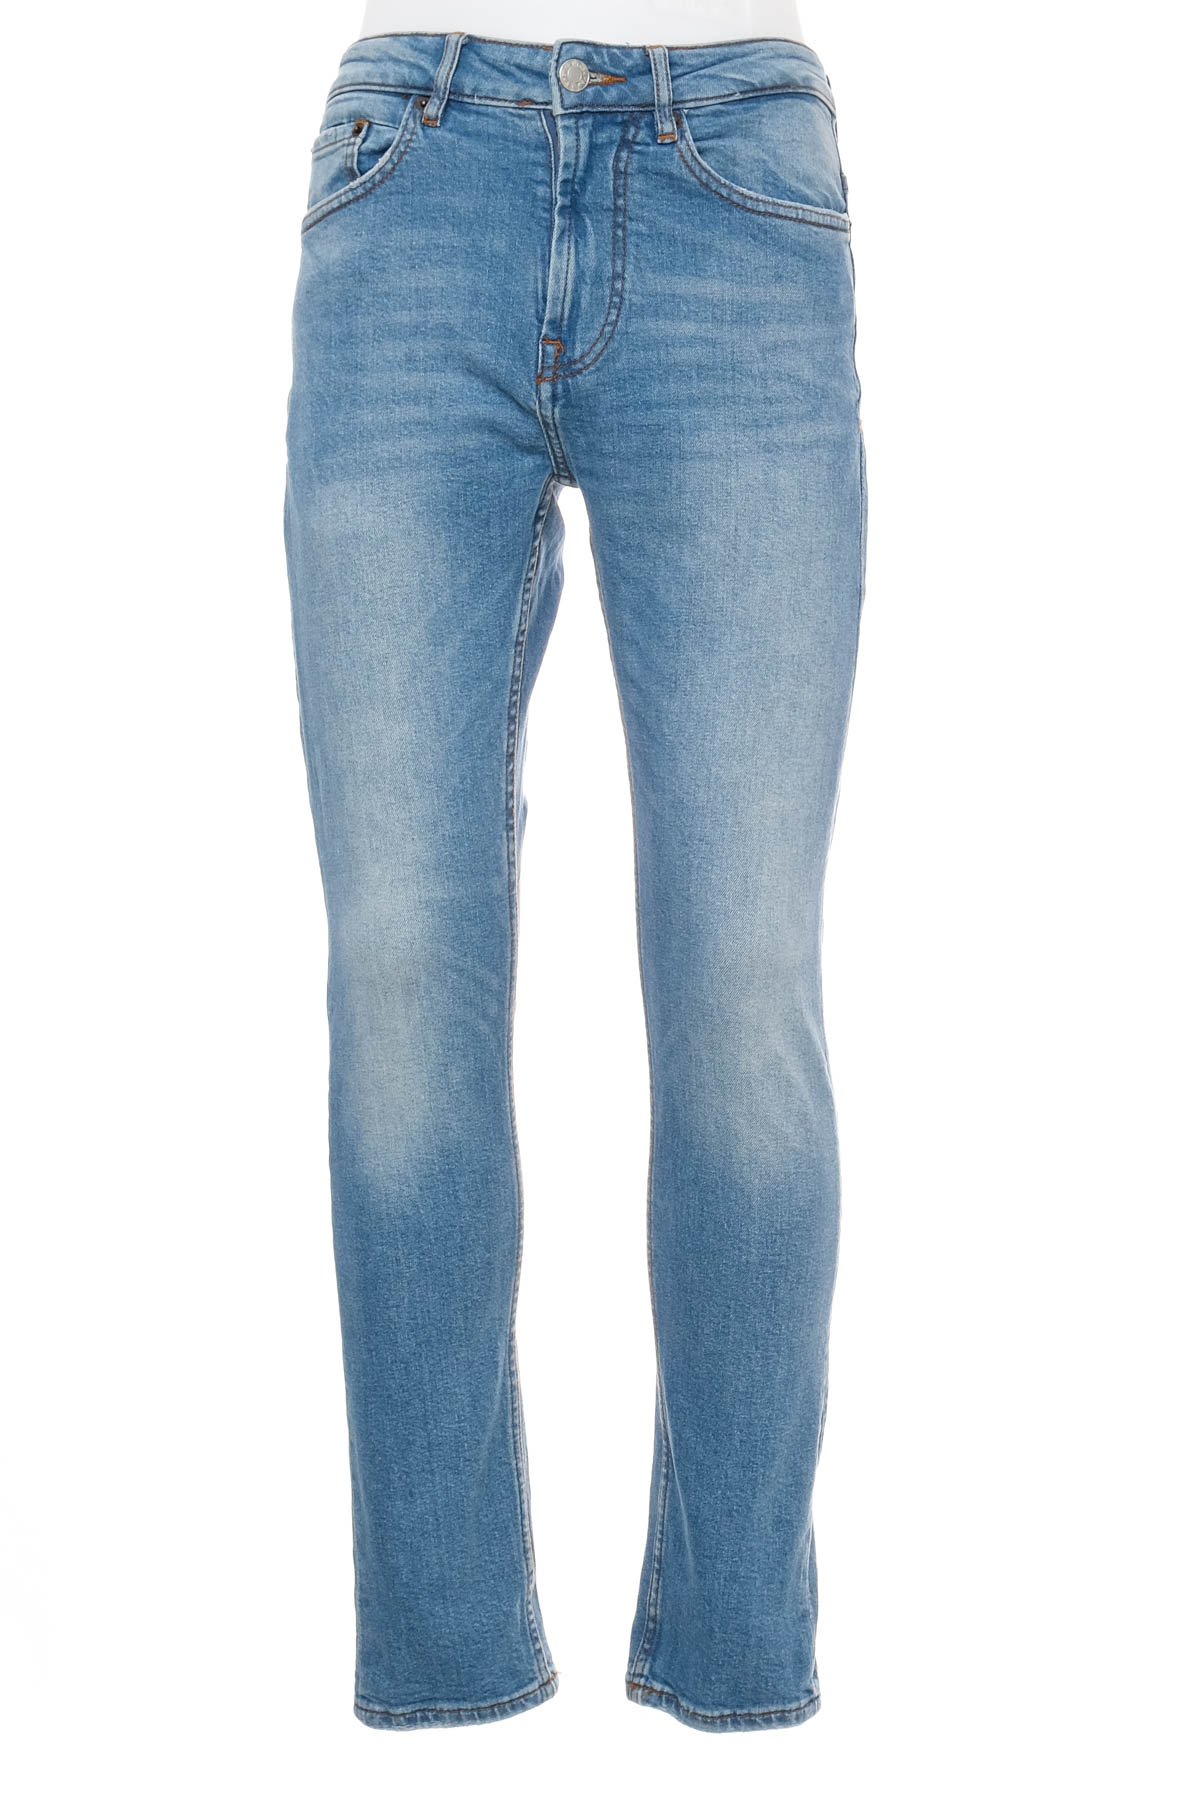 Jeans pentru bărbăți - Pull & Bear - 0